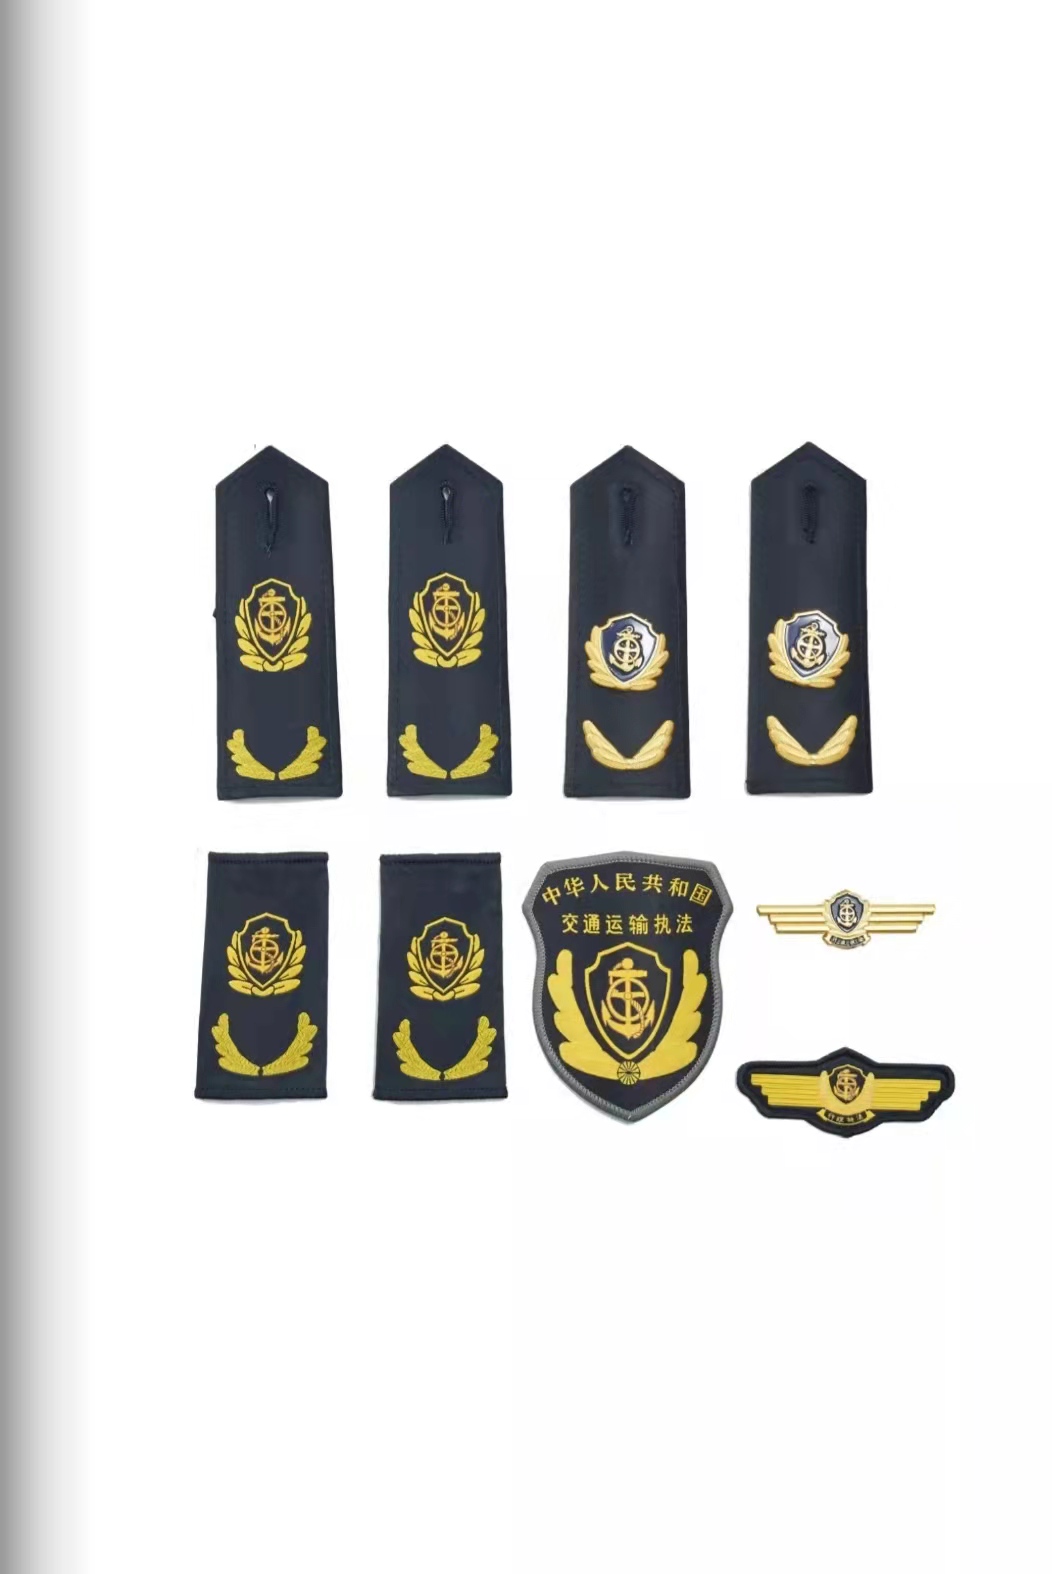 牡丹江六部门统一交通运输执法服装标志